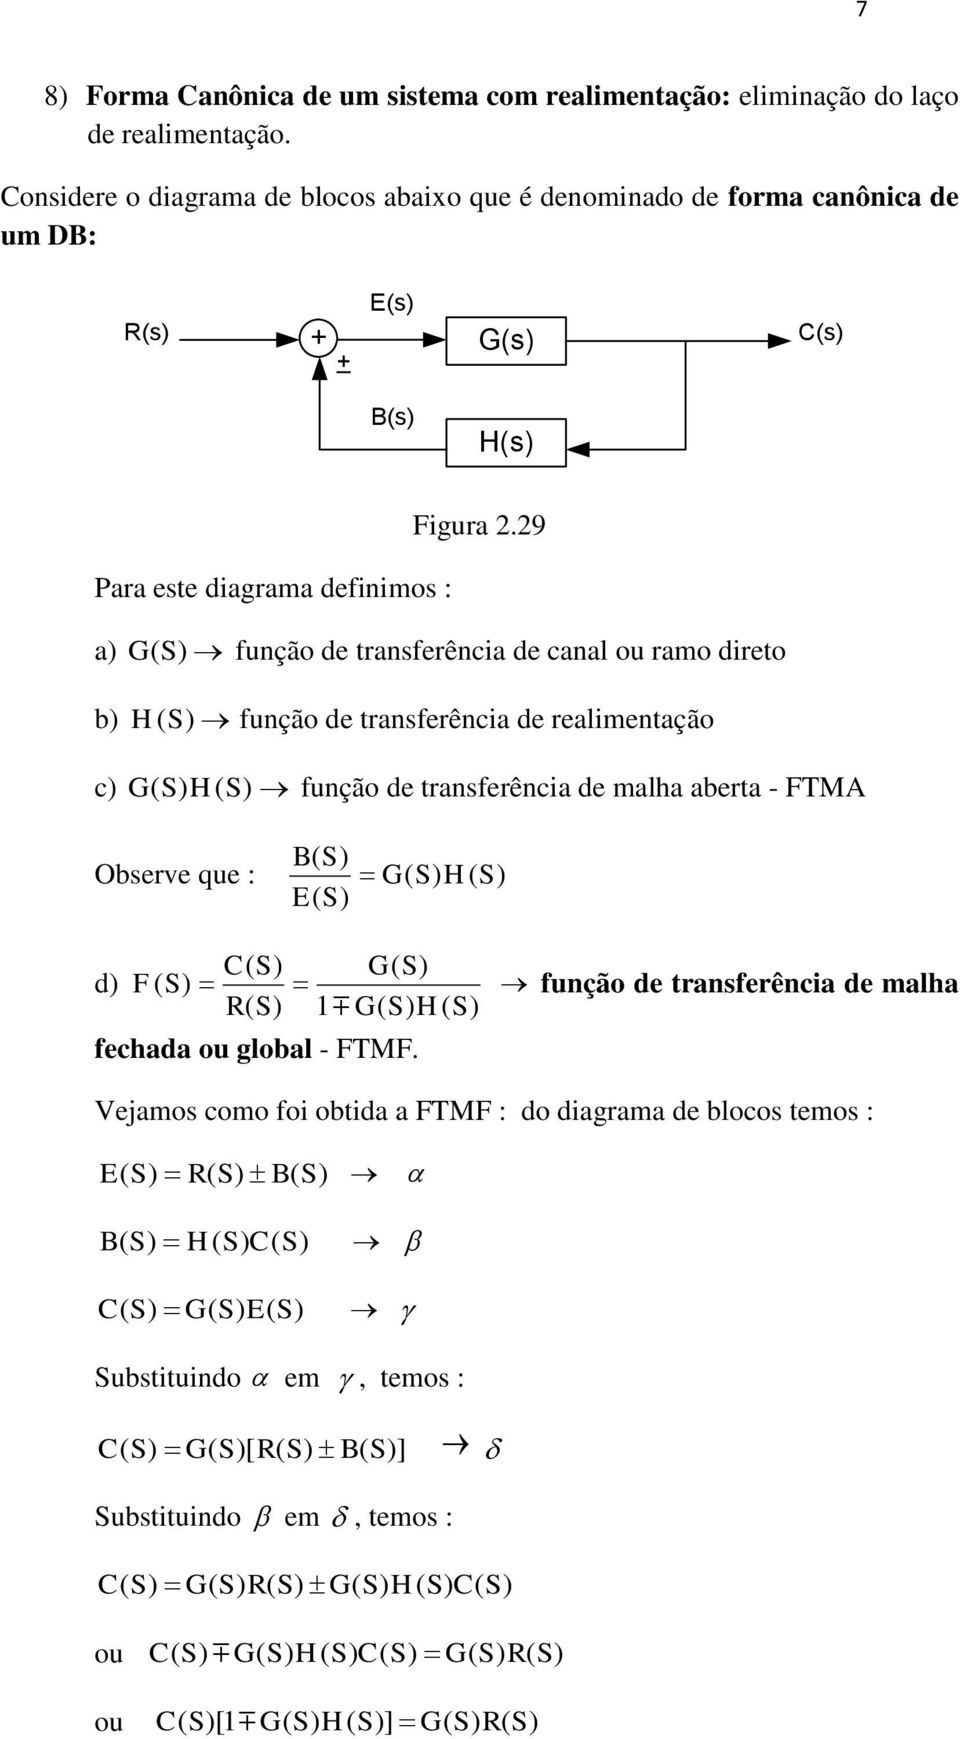 29 a) S ( ) função de transferência de canal ou ramo direto b) HS ( ) função de transferência de realimentação c) ( S) H( S) função de transferência de malha aberta FTM B( S) Observe que : ( S) H (